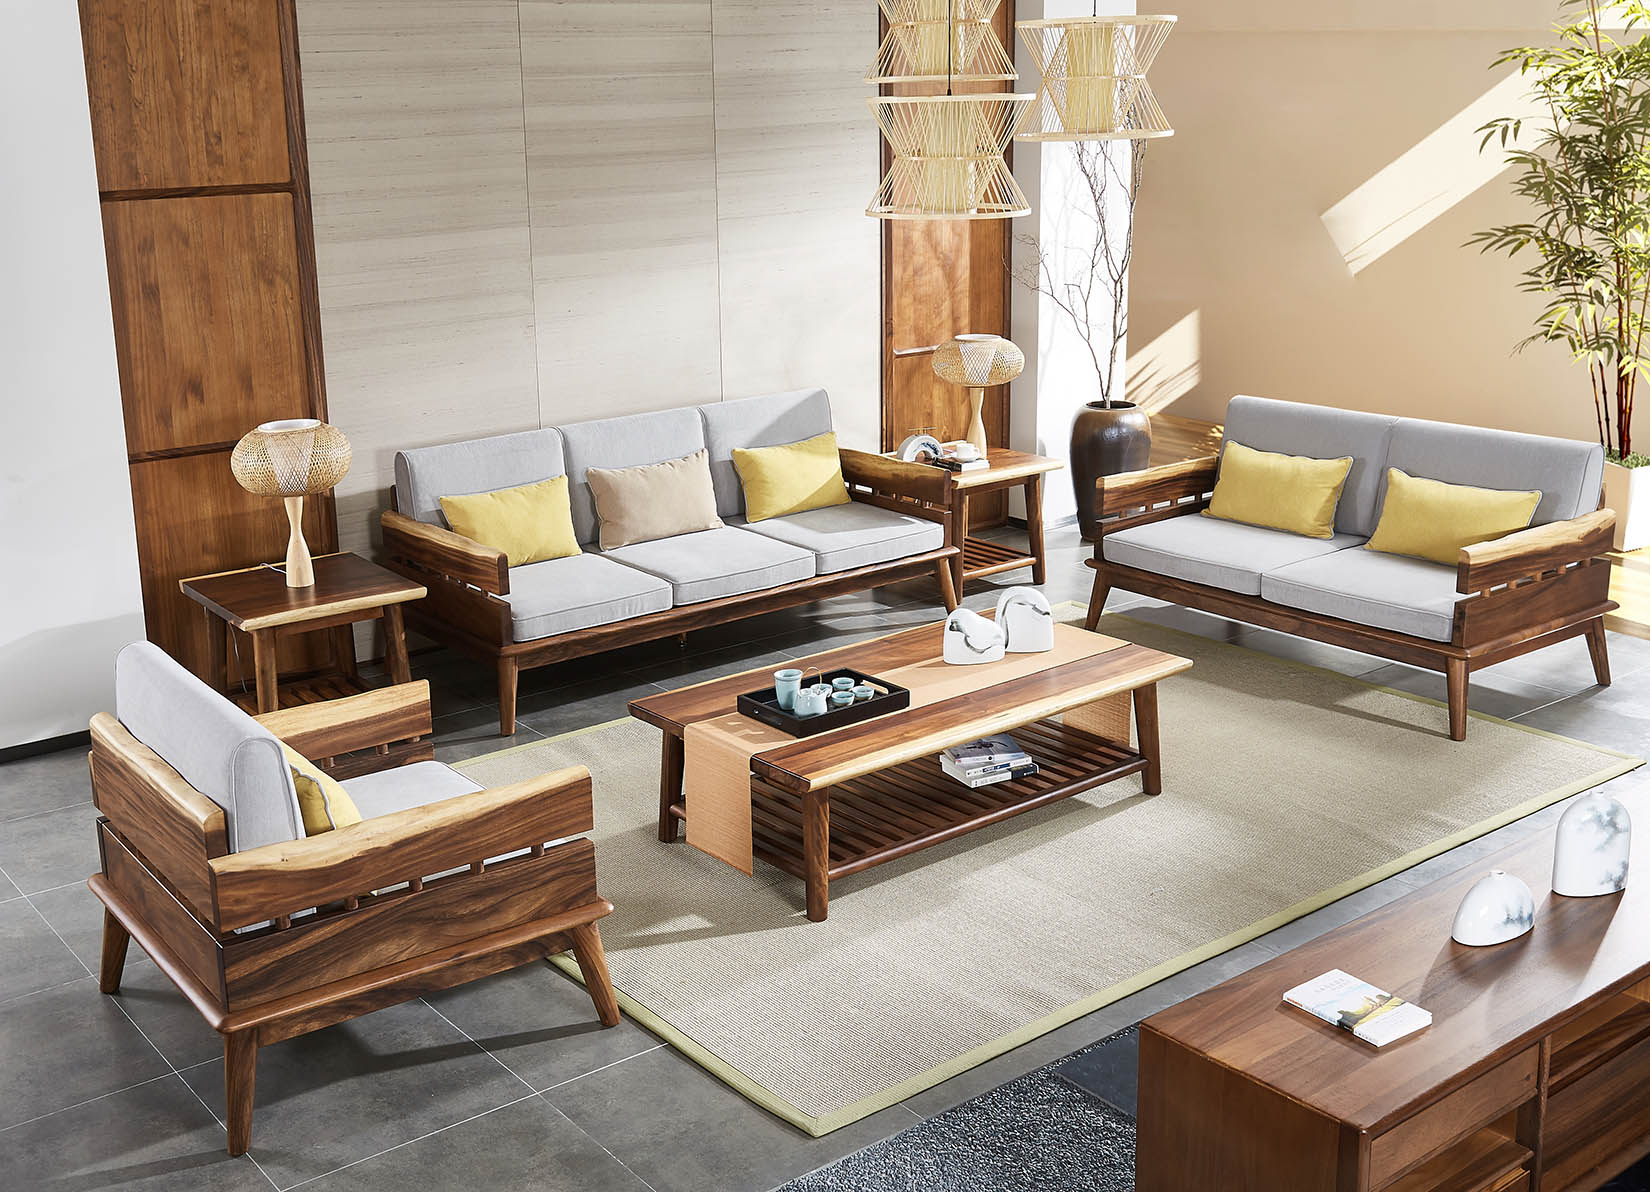 胡桃院子-新中式家具-胡桃木天然乳白色边材-原生态沙发茶几